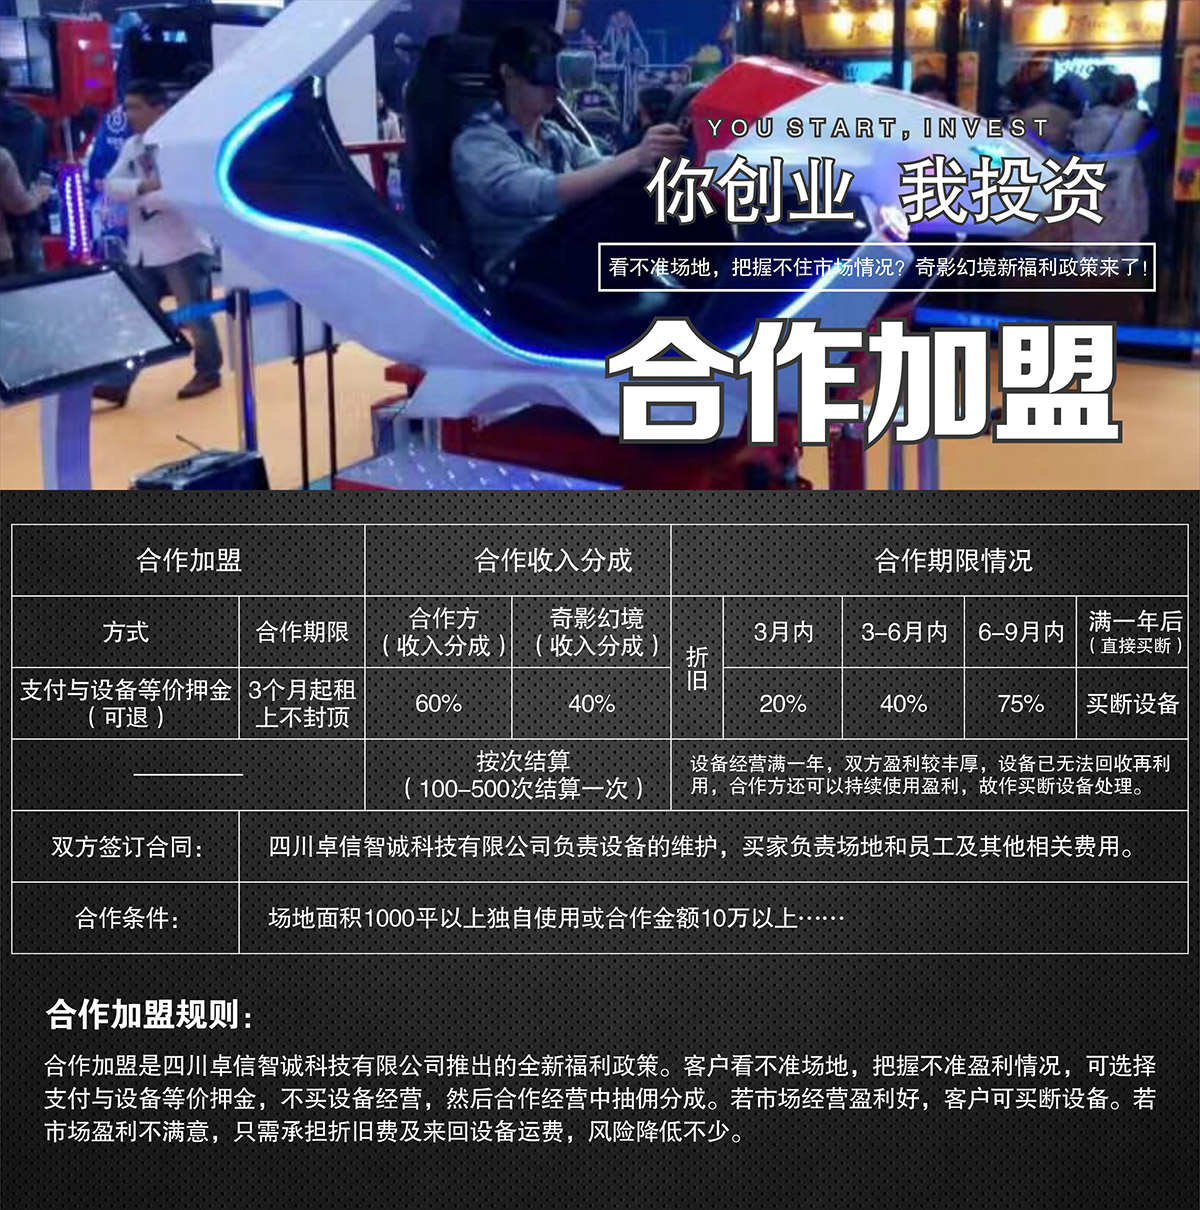 11-卓信智誠VR飛行賽車合作加盟.jpg